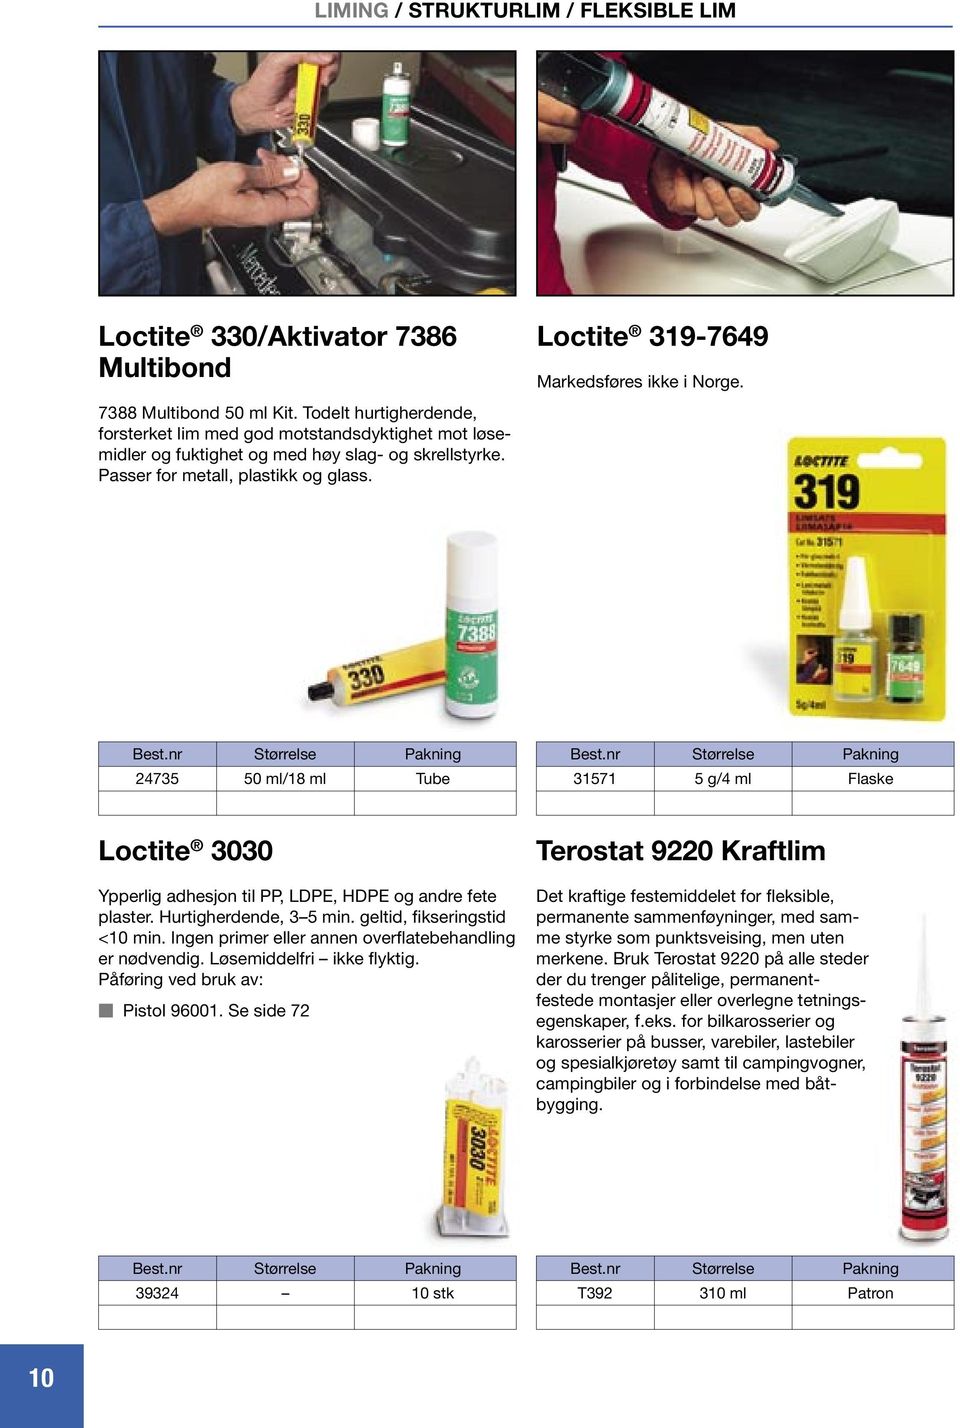 Loctite 319-769 Markedsføres ikke i Norge. 2735 50 ml/18 ml Tube 31571 5 g/ ml Flaske Loctite 3030 Ypperlig adhesjon til PP, LDPE, HDPE og andre fete plaster. Hurtigherdende, 3 5 min.